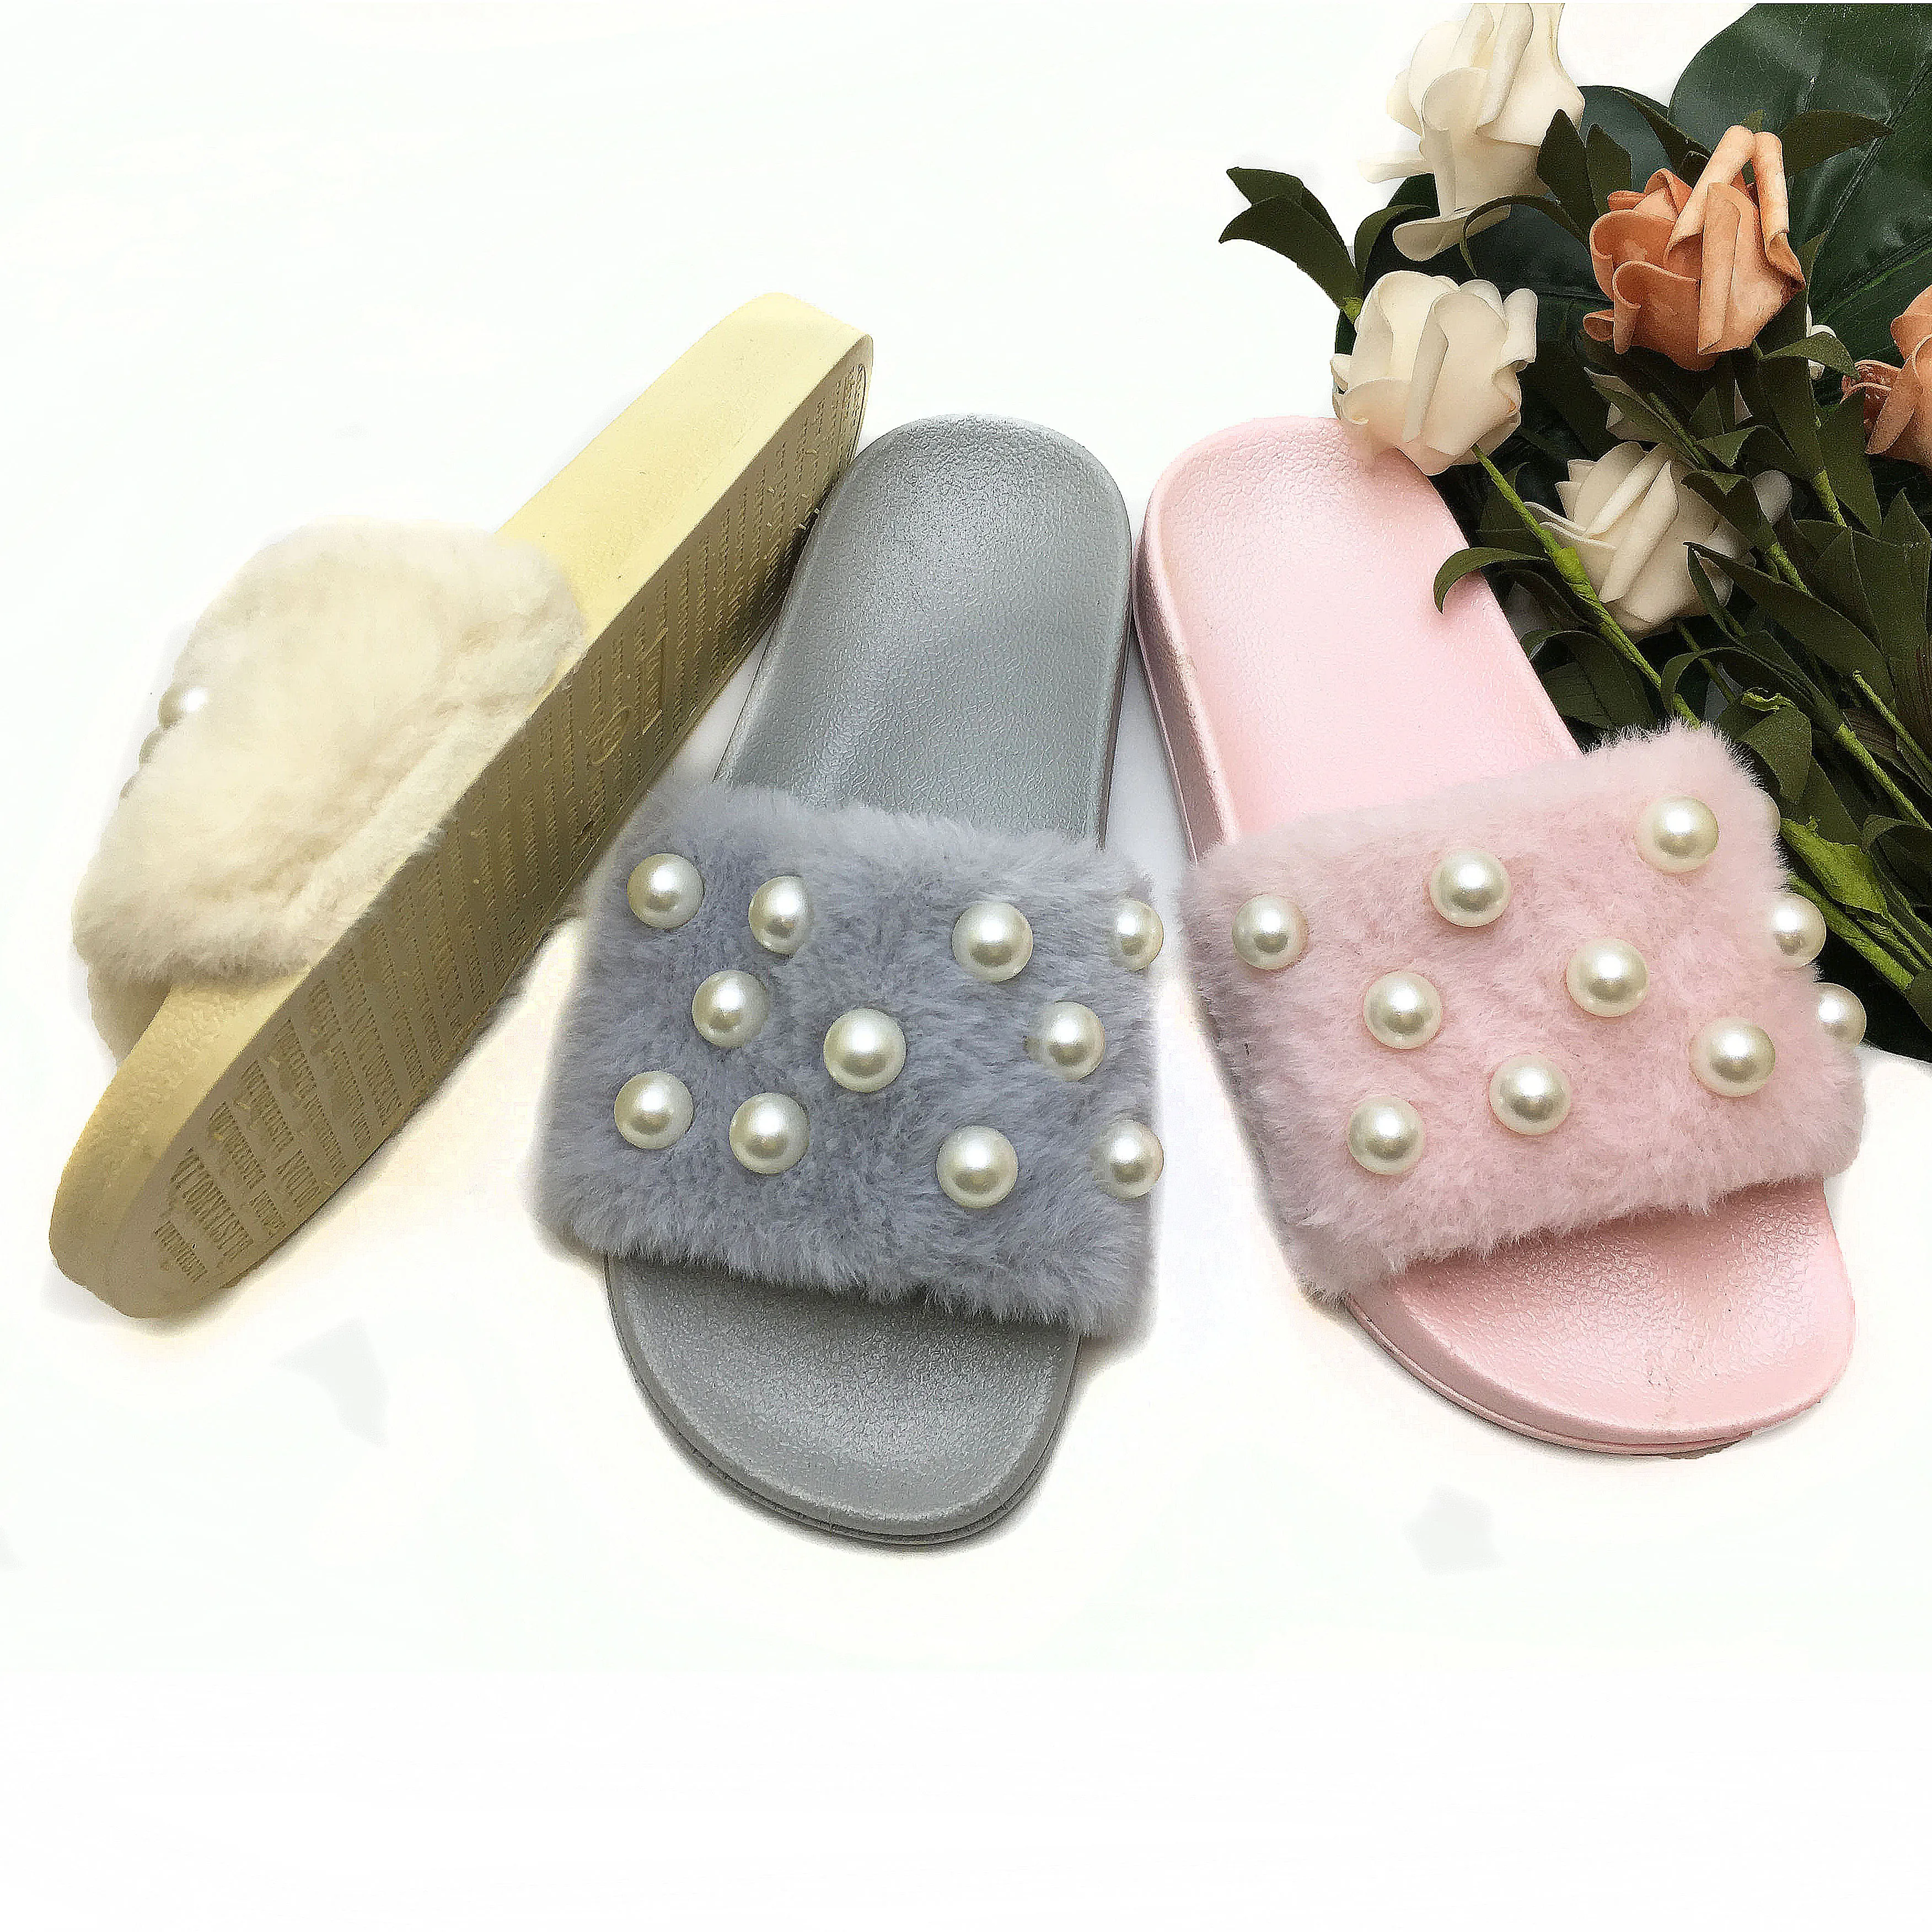 Al Por De Pvc Zapatillas De Peluche Superior Anti - Slip Barato Sandalias Zapatos De Mujer - Buy De Moda Product on Alibaba.com